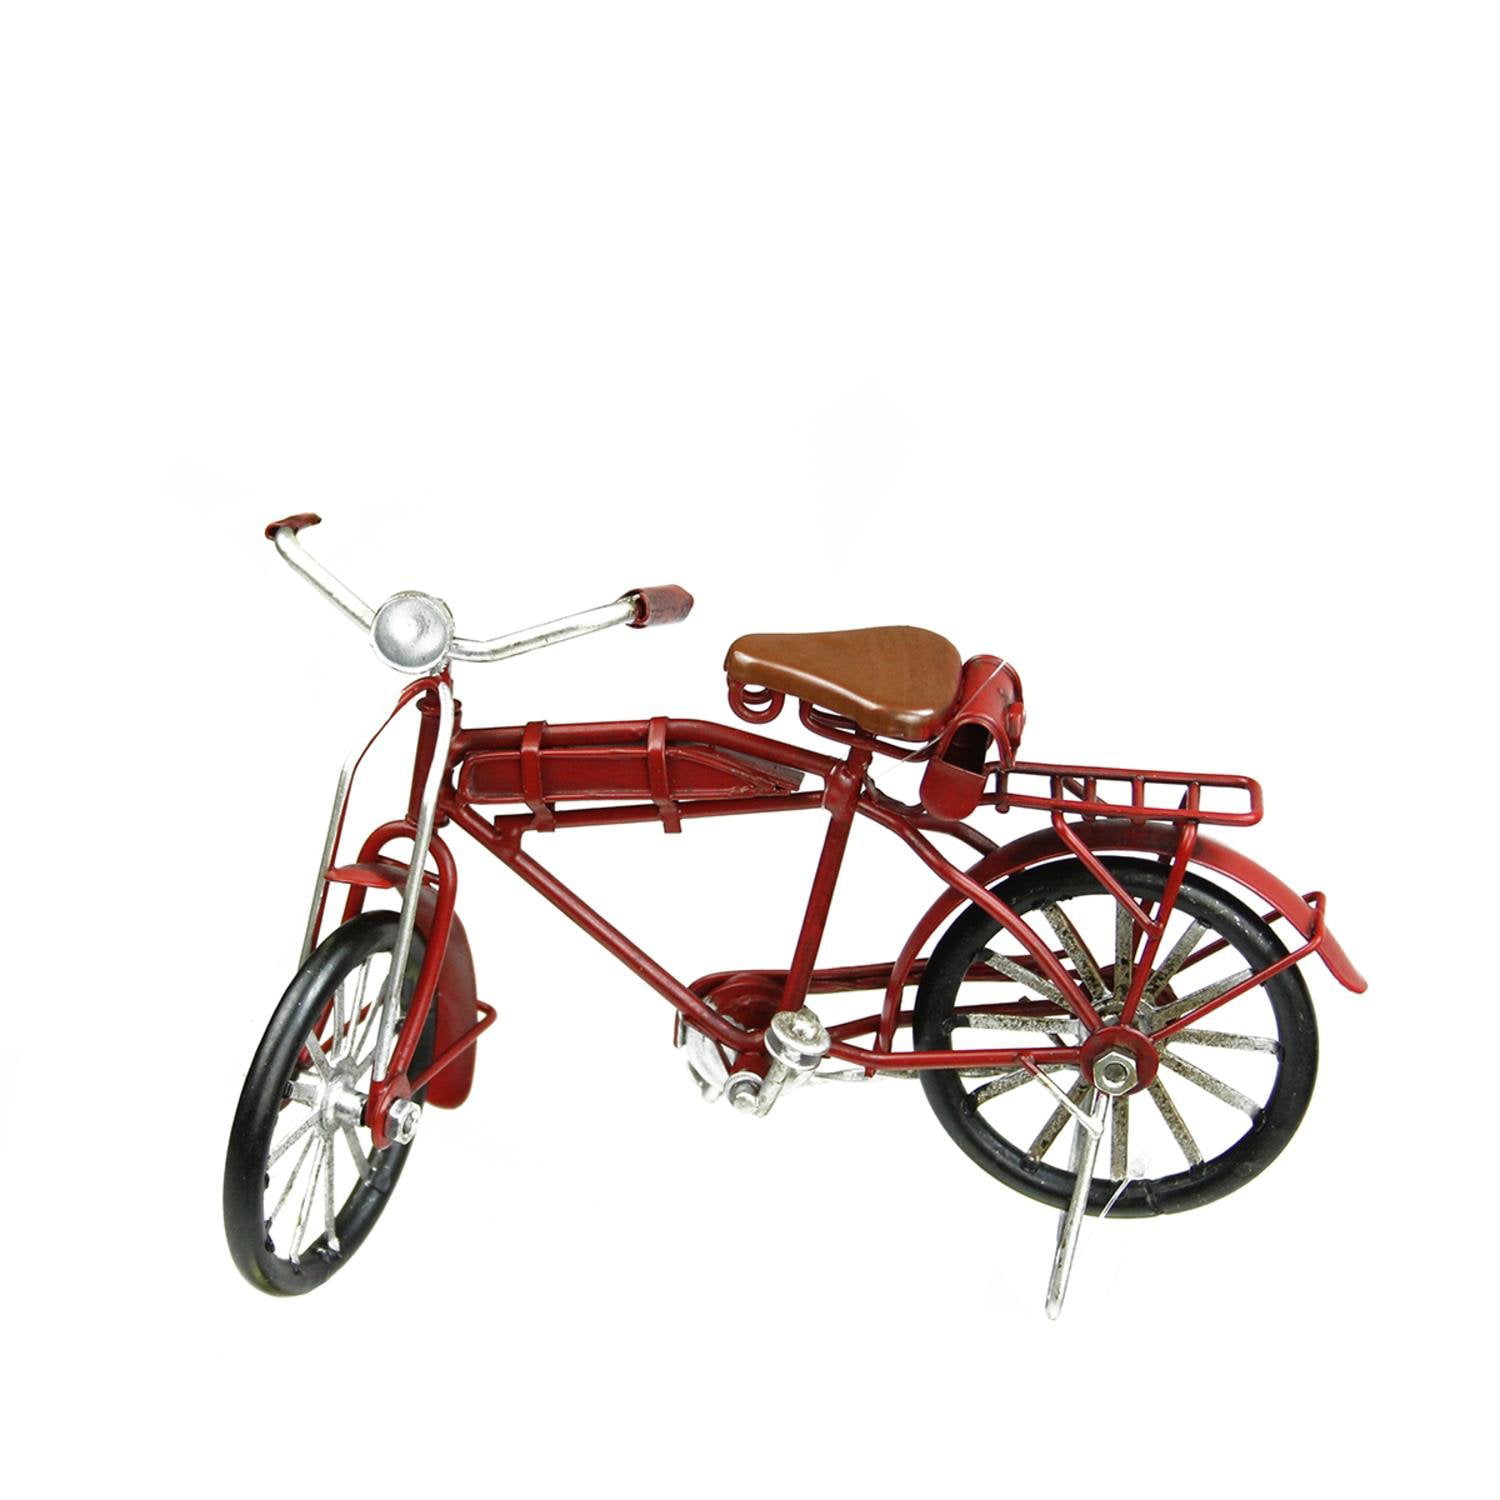 GALLERIE II METAL CRAFT 6.75" VINTAGE RED BIKE BICYCLE CHRISTMAS ORNAMENT 